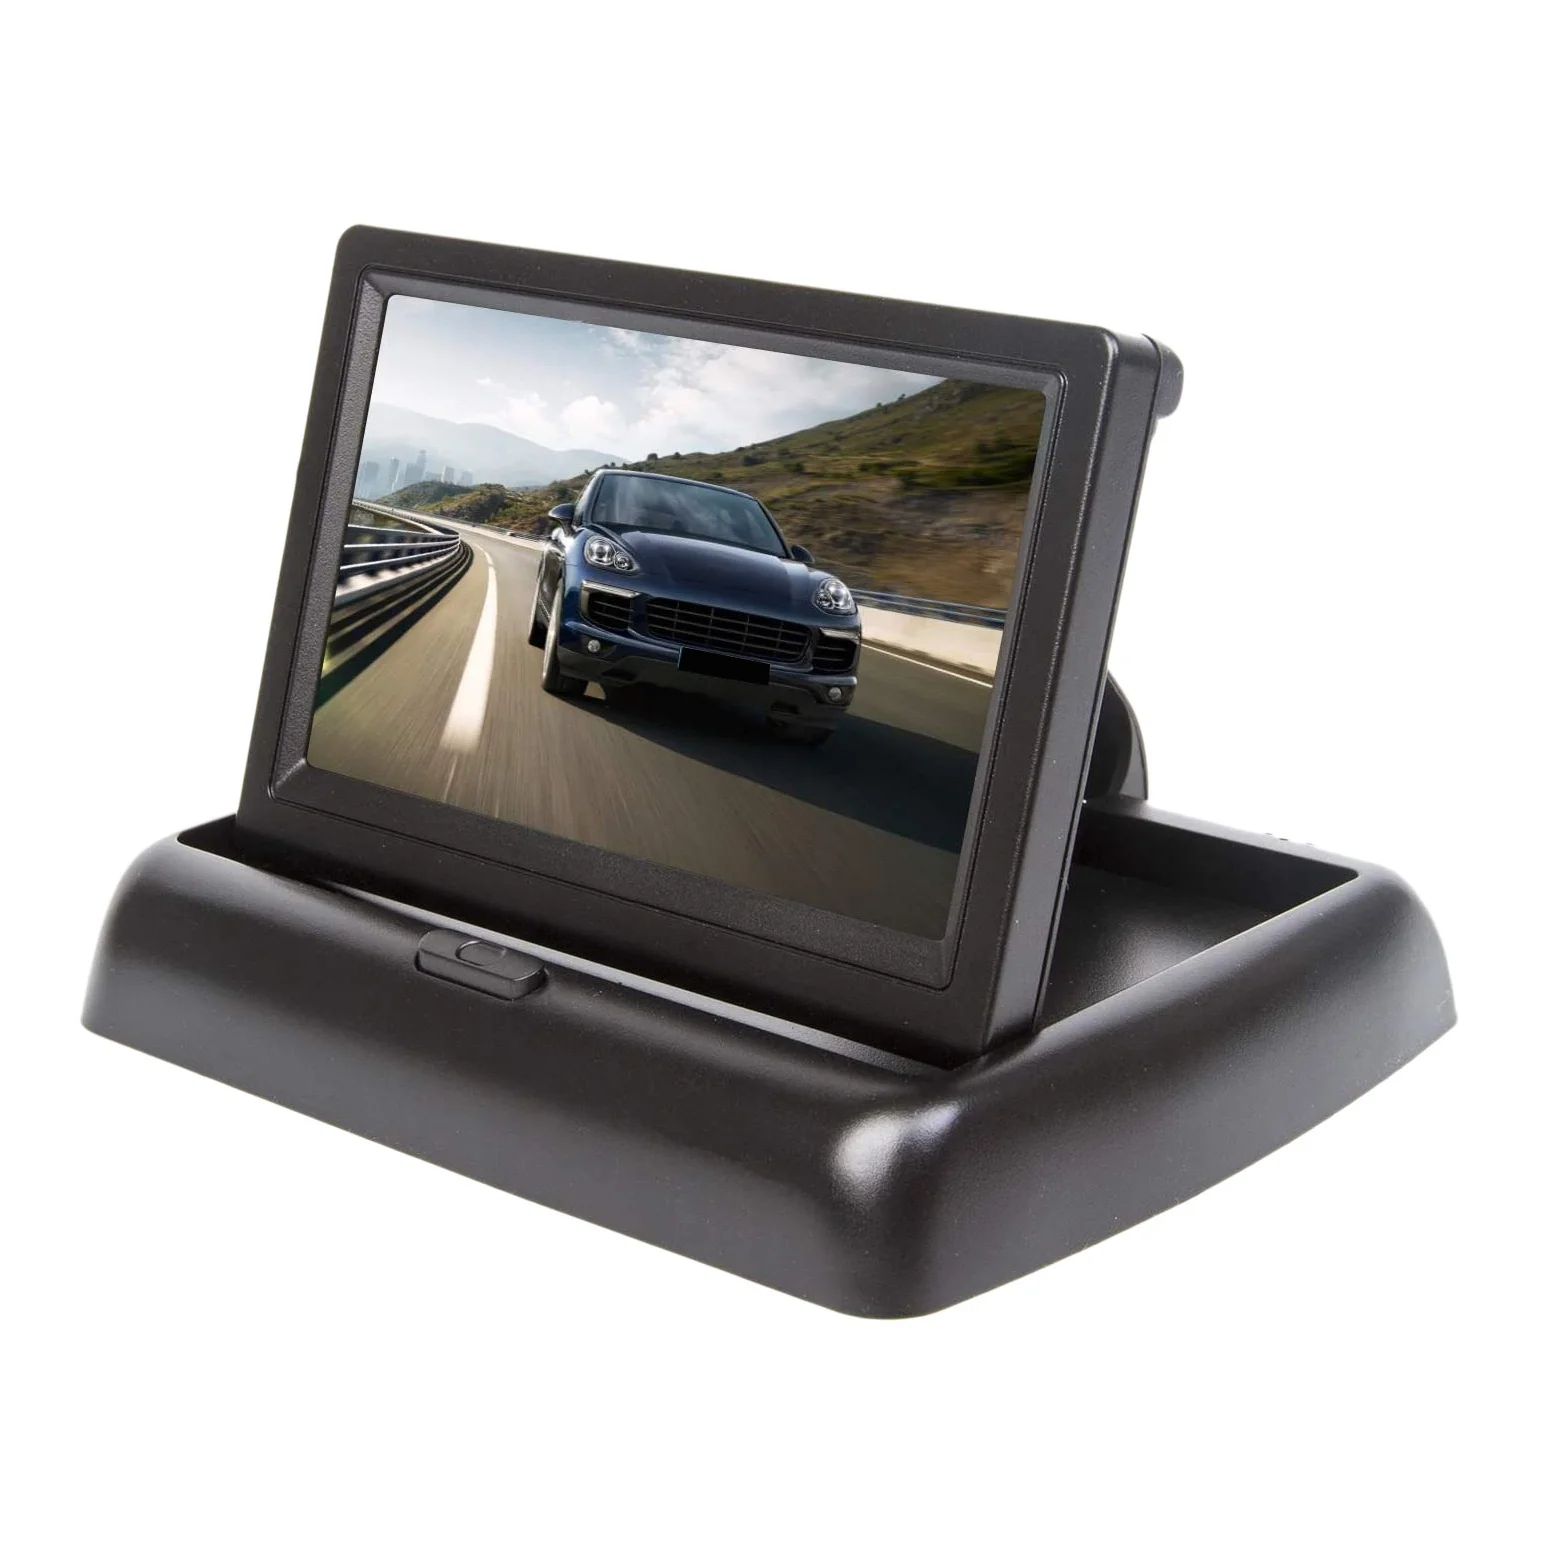 

Car 5 Inch Folding Monitors HD Video Mini Car Parking TFT LCD Monitor Display Rear View Reverse Kits with Backup Camera